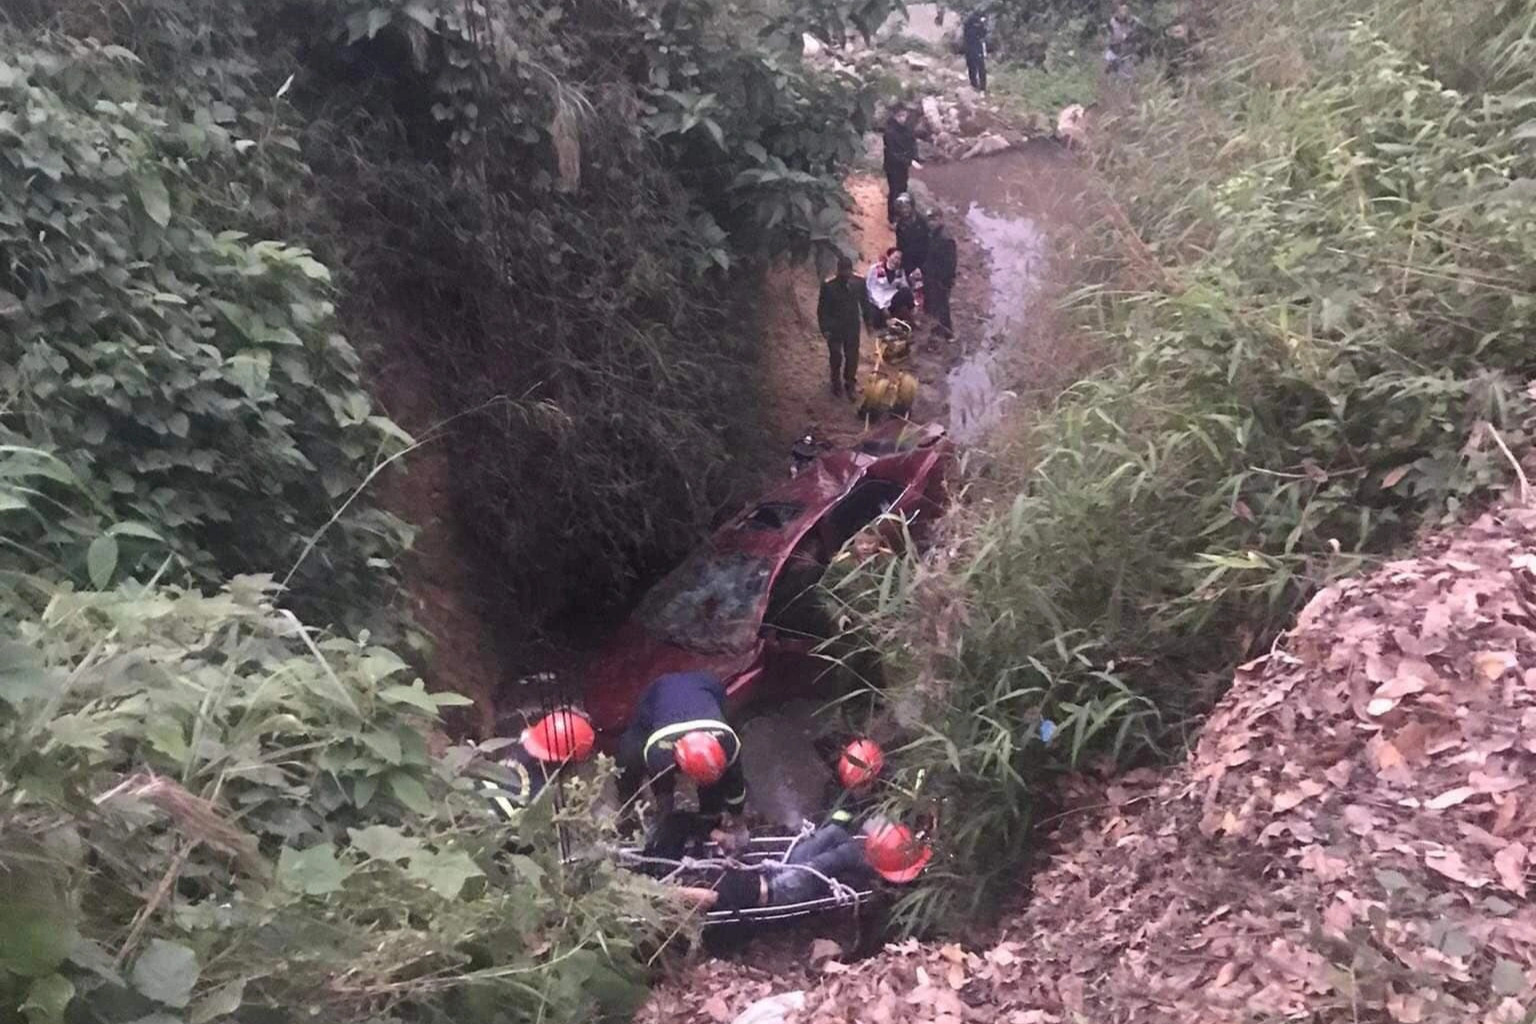 Ô tô chở 3 người rơi xuống khe suối 15 tiếng không ai biết